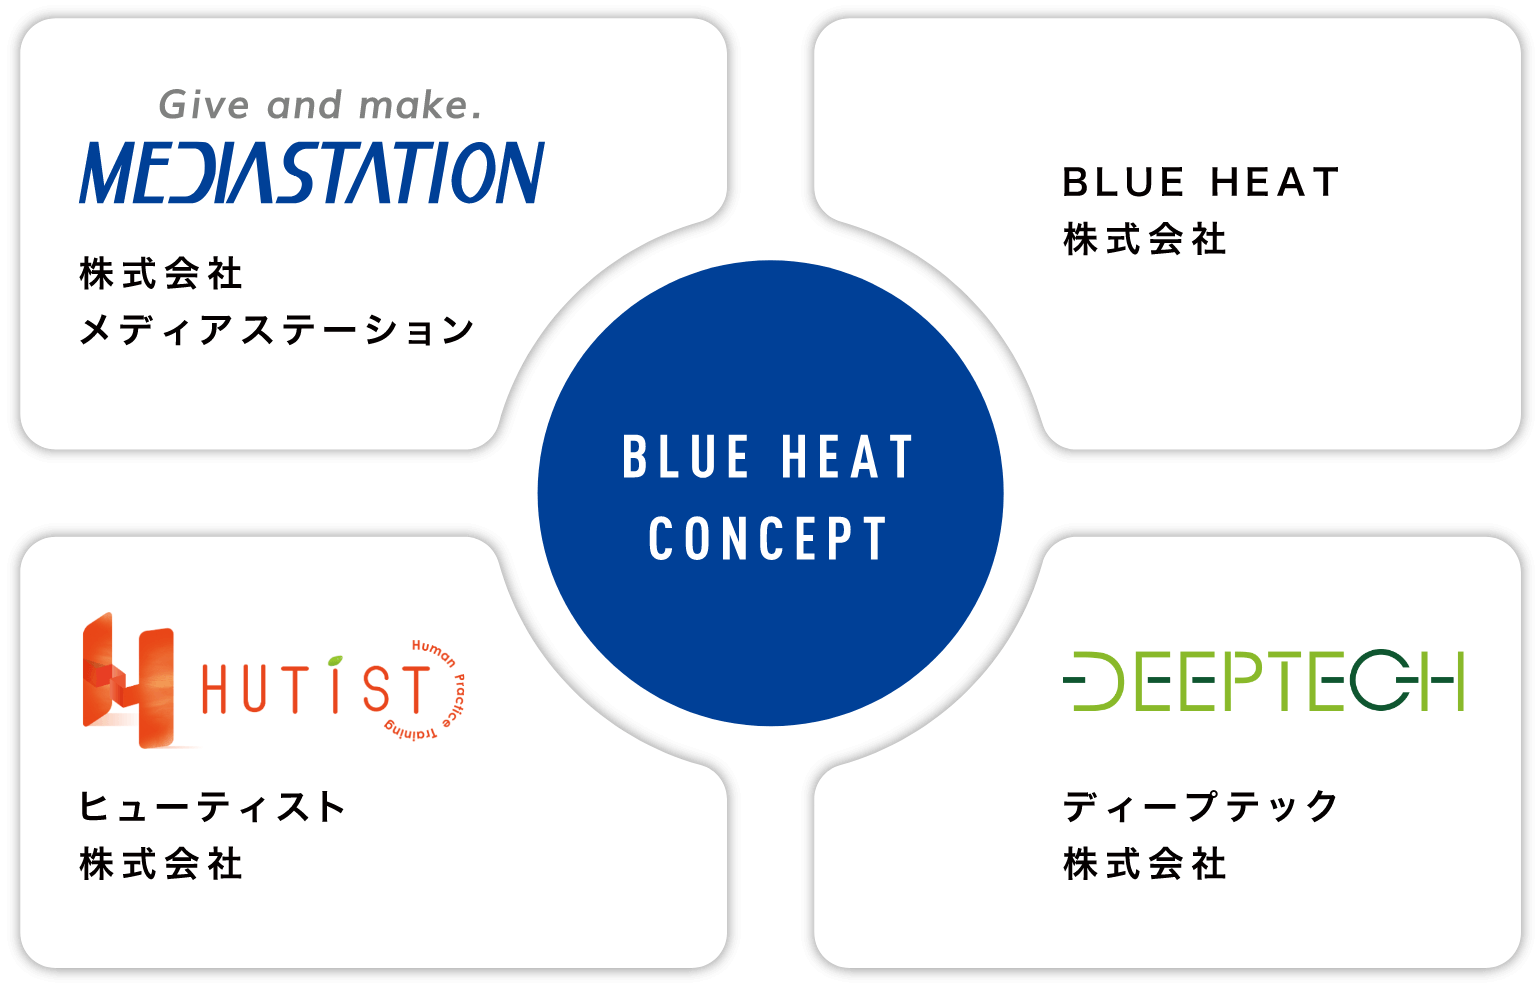 BLUE HEAT CONCEPT